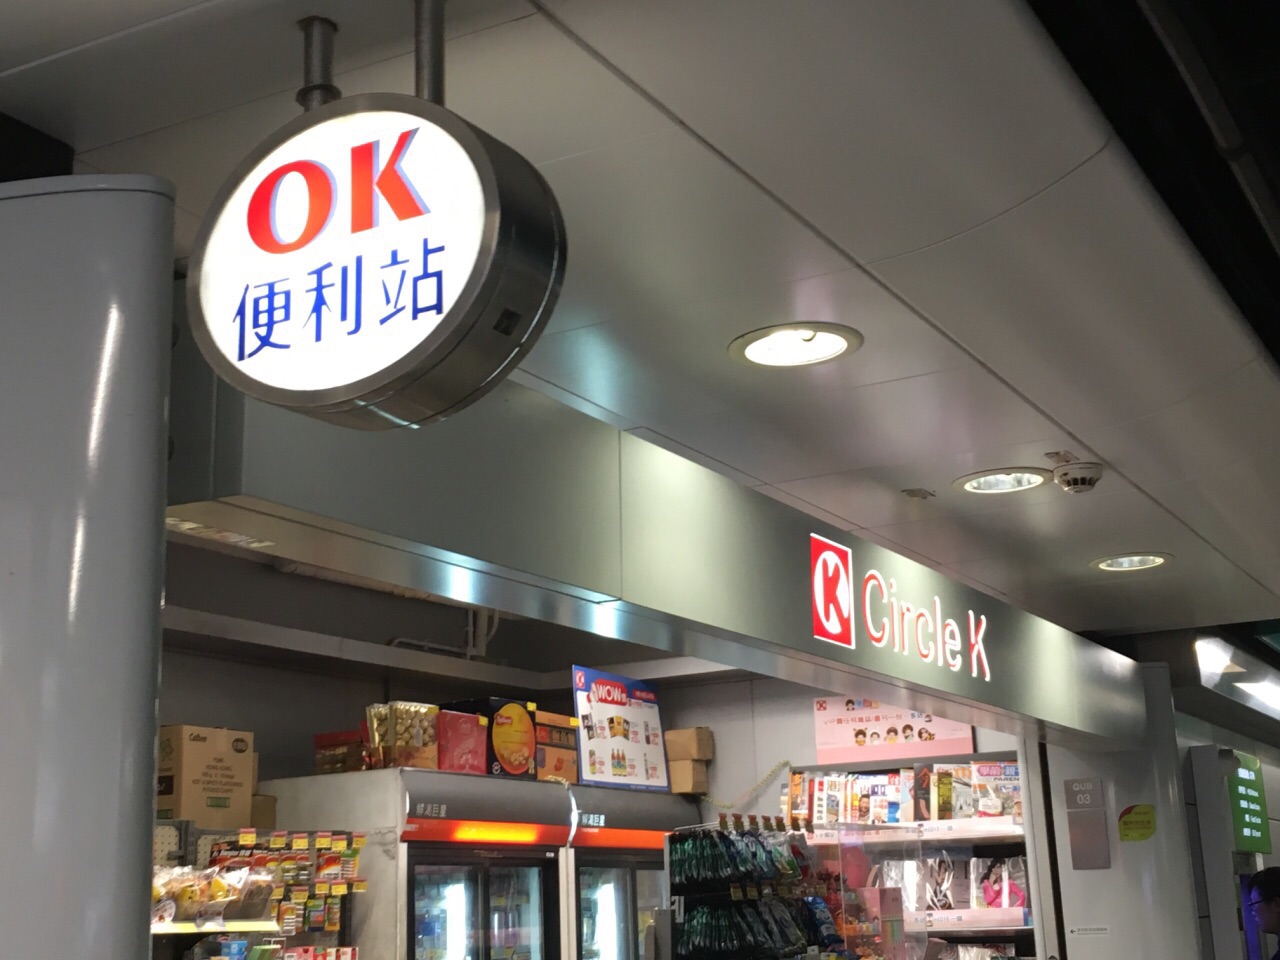 香港ok便利店鰂鱼涌港铁站购物攻略,ok便利店鰂鱼涌港